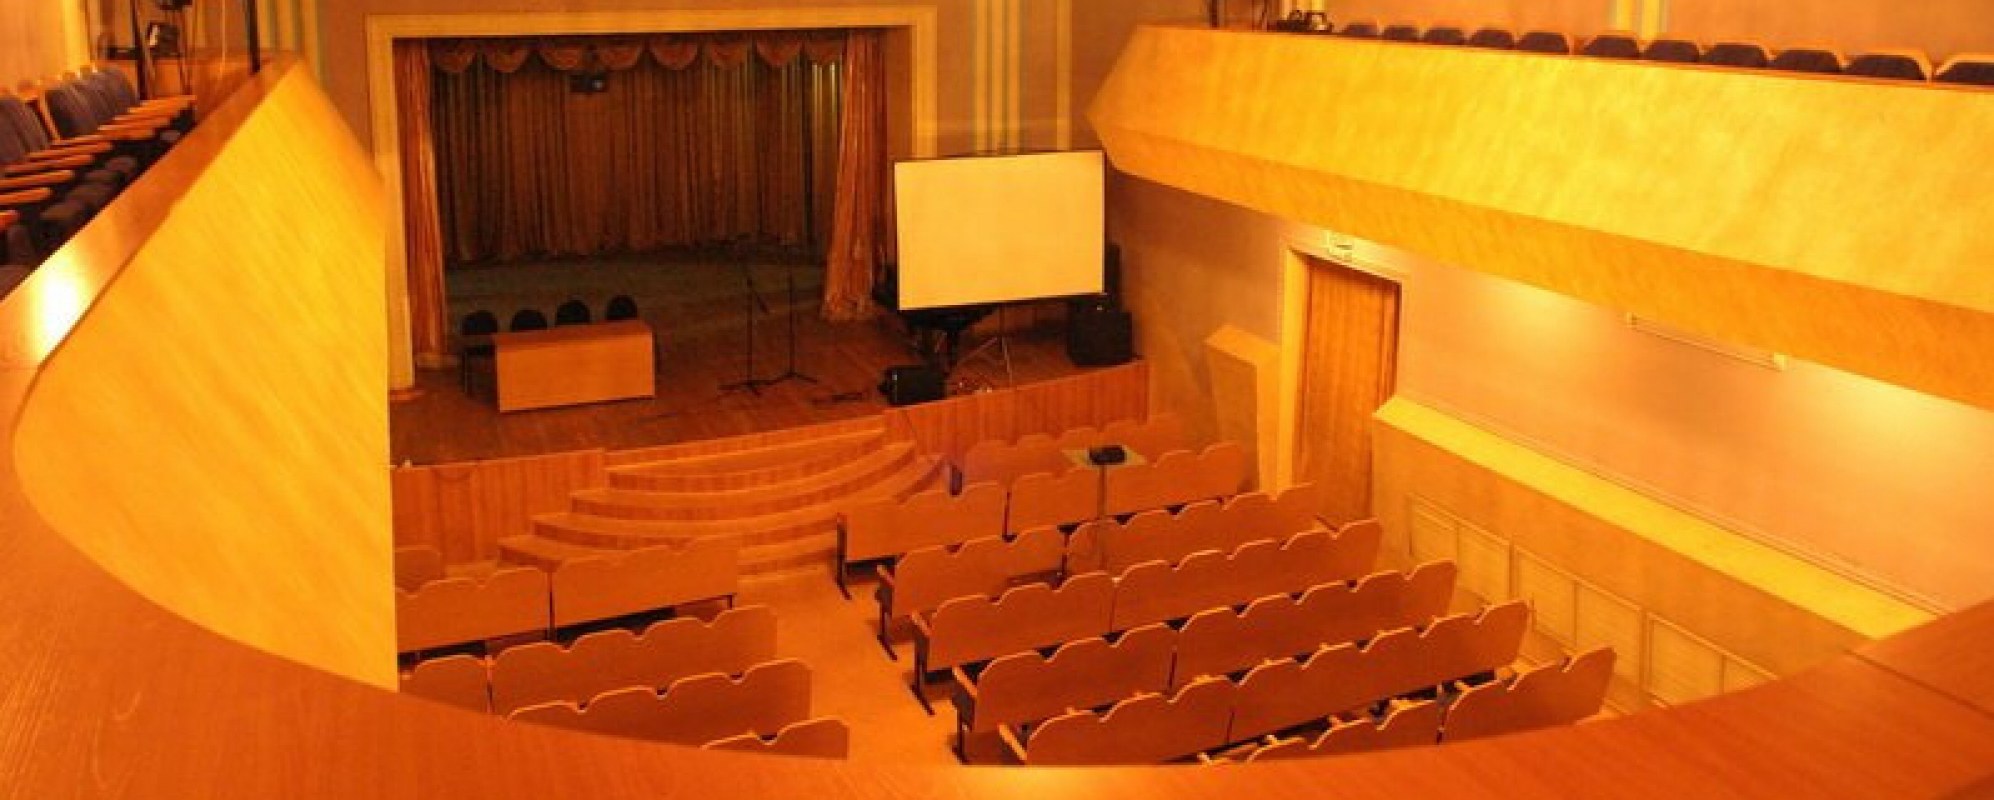 Фотографии концертного зала Зрительный зал Городского Дома культуры Горно - Алтайска